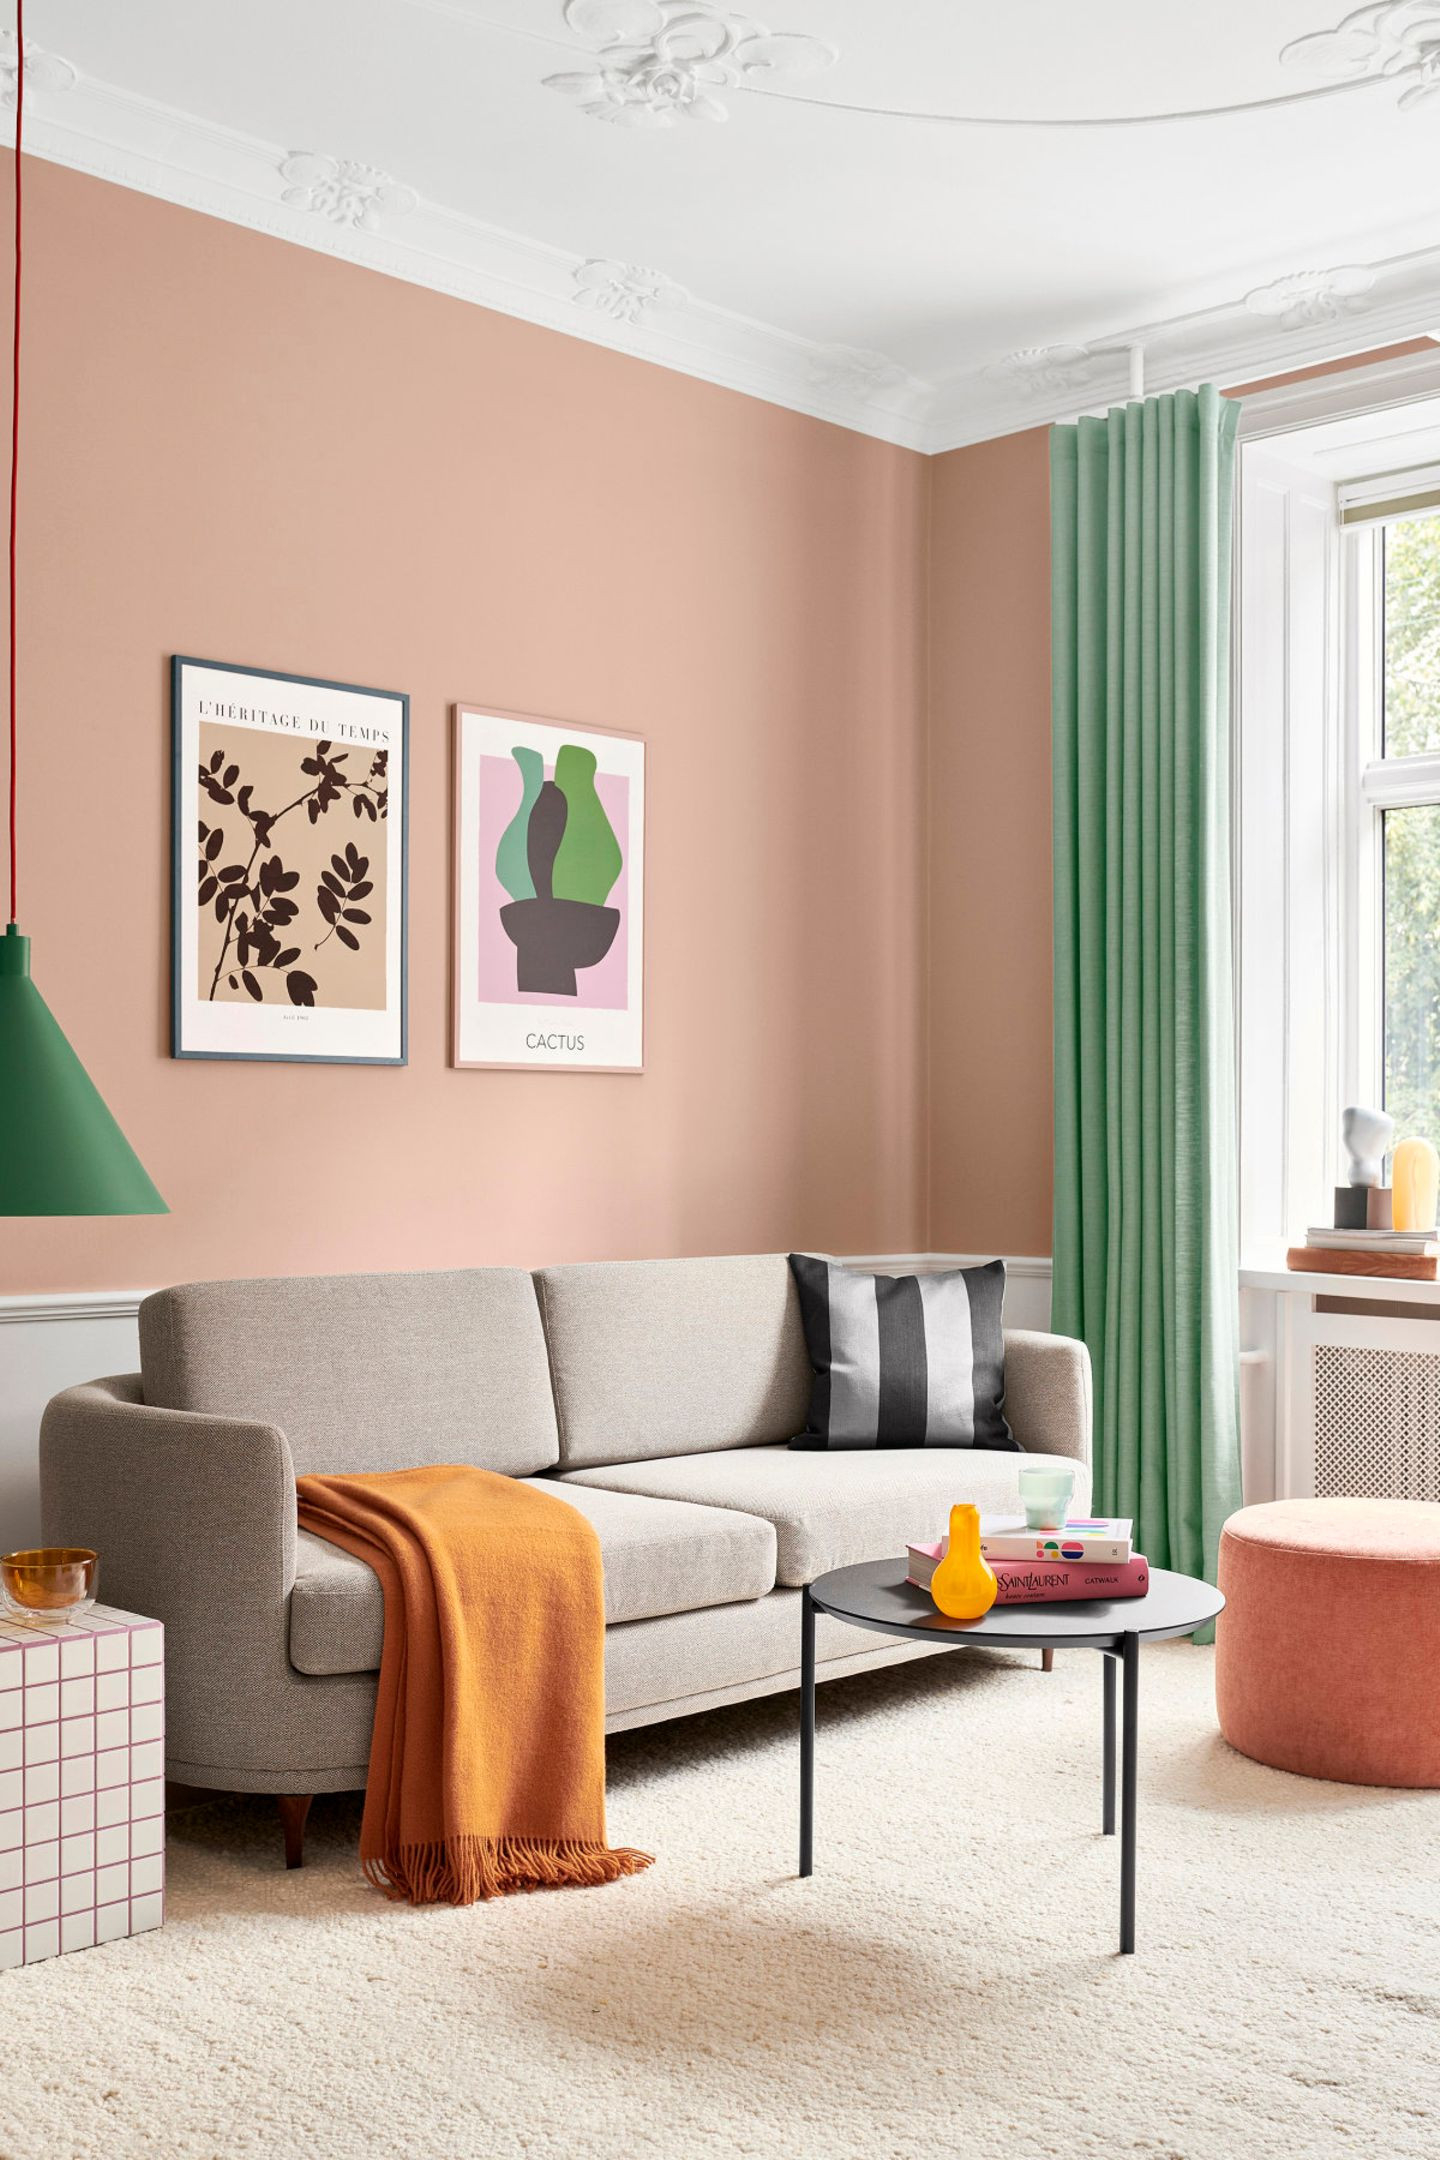 Wohnzimmer Mit Pfirsichfarbener Wand - [Schöner Wohnen] in Farbige Wand Wohnzimmer